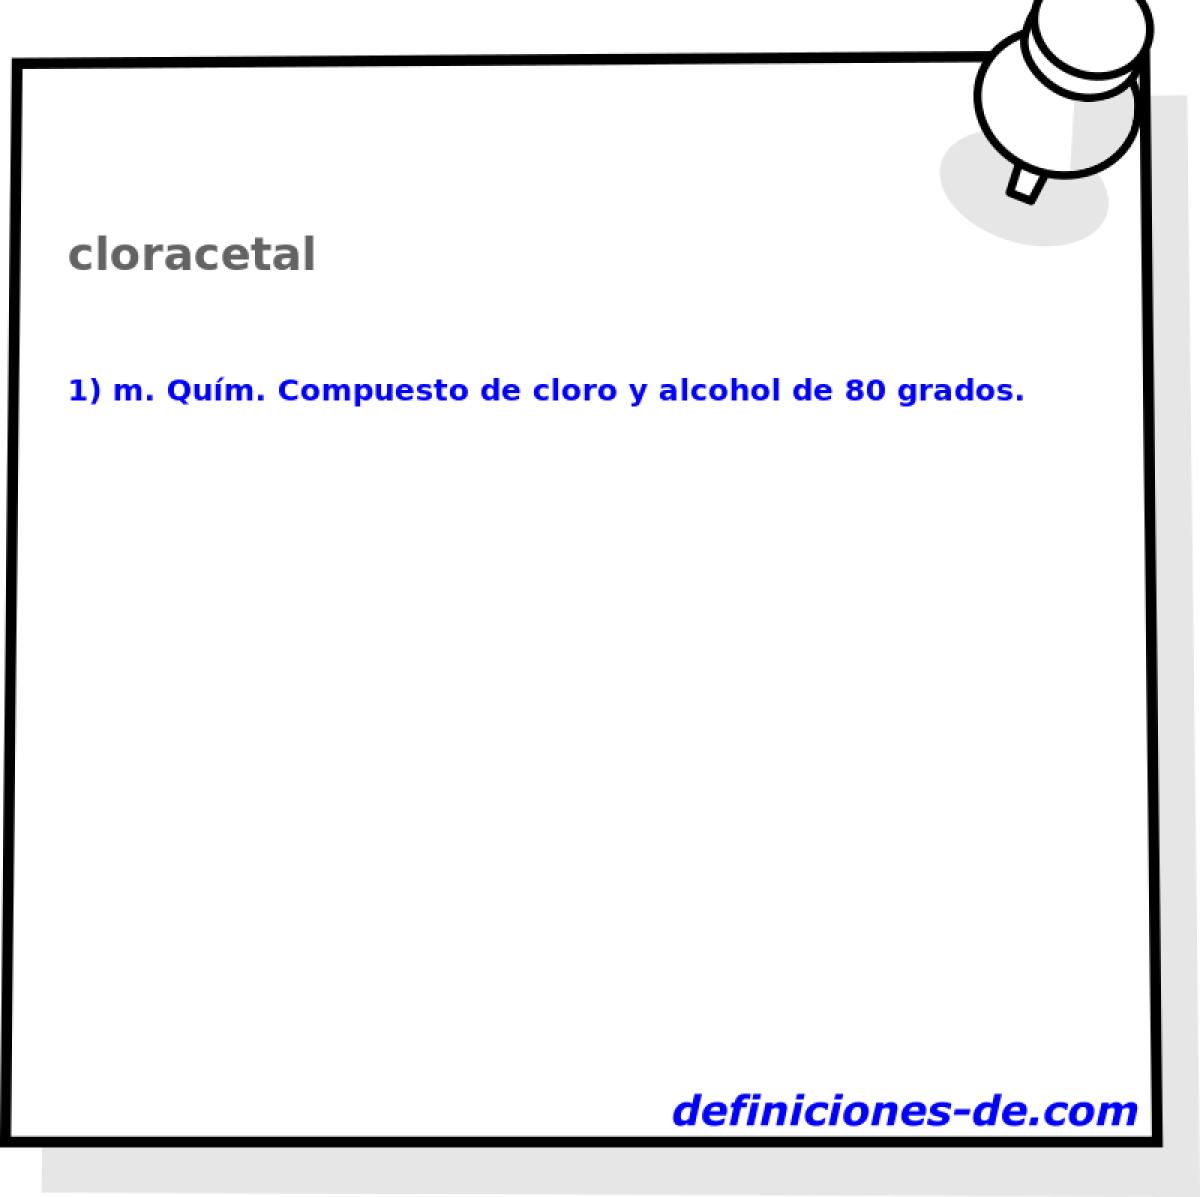 cloracetal 